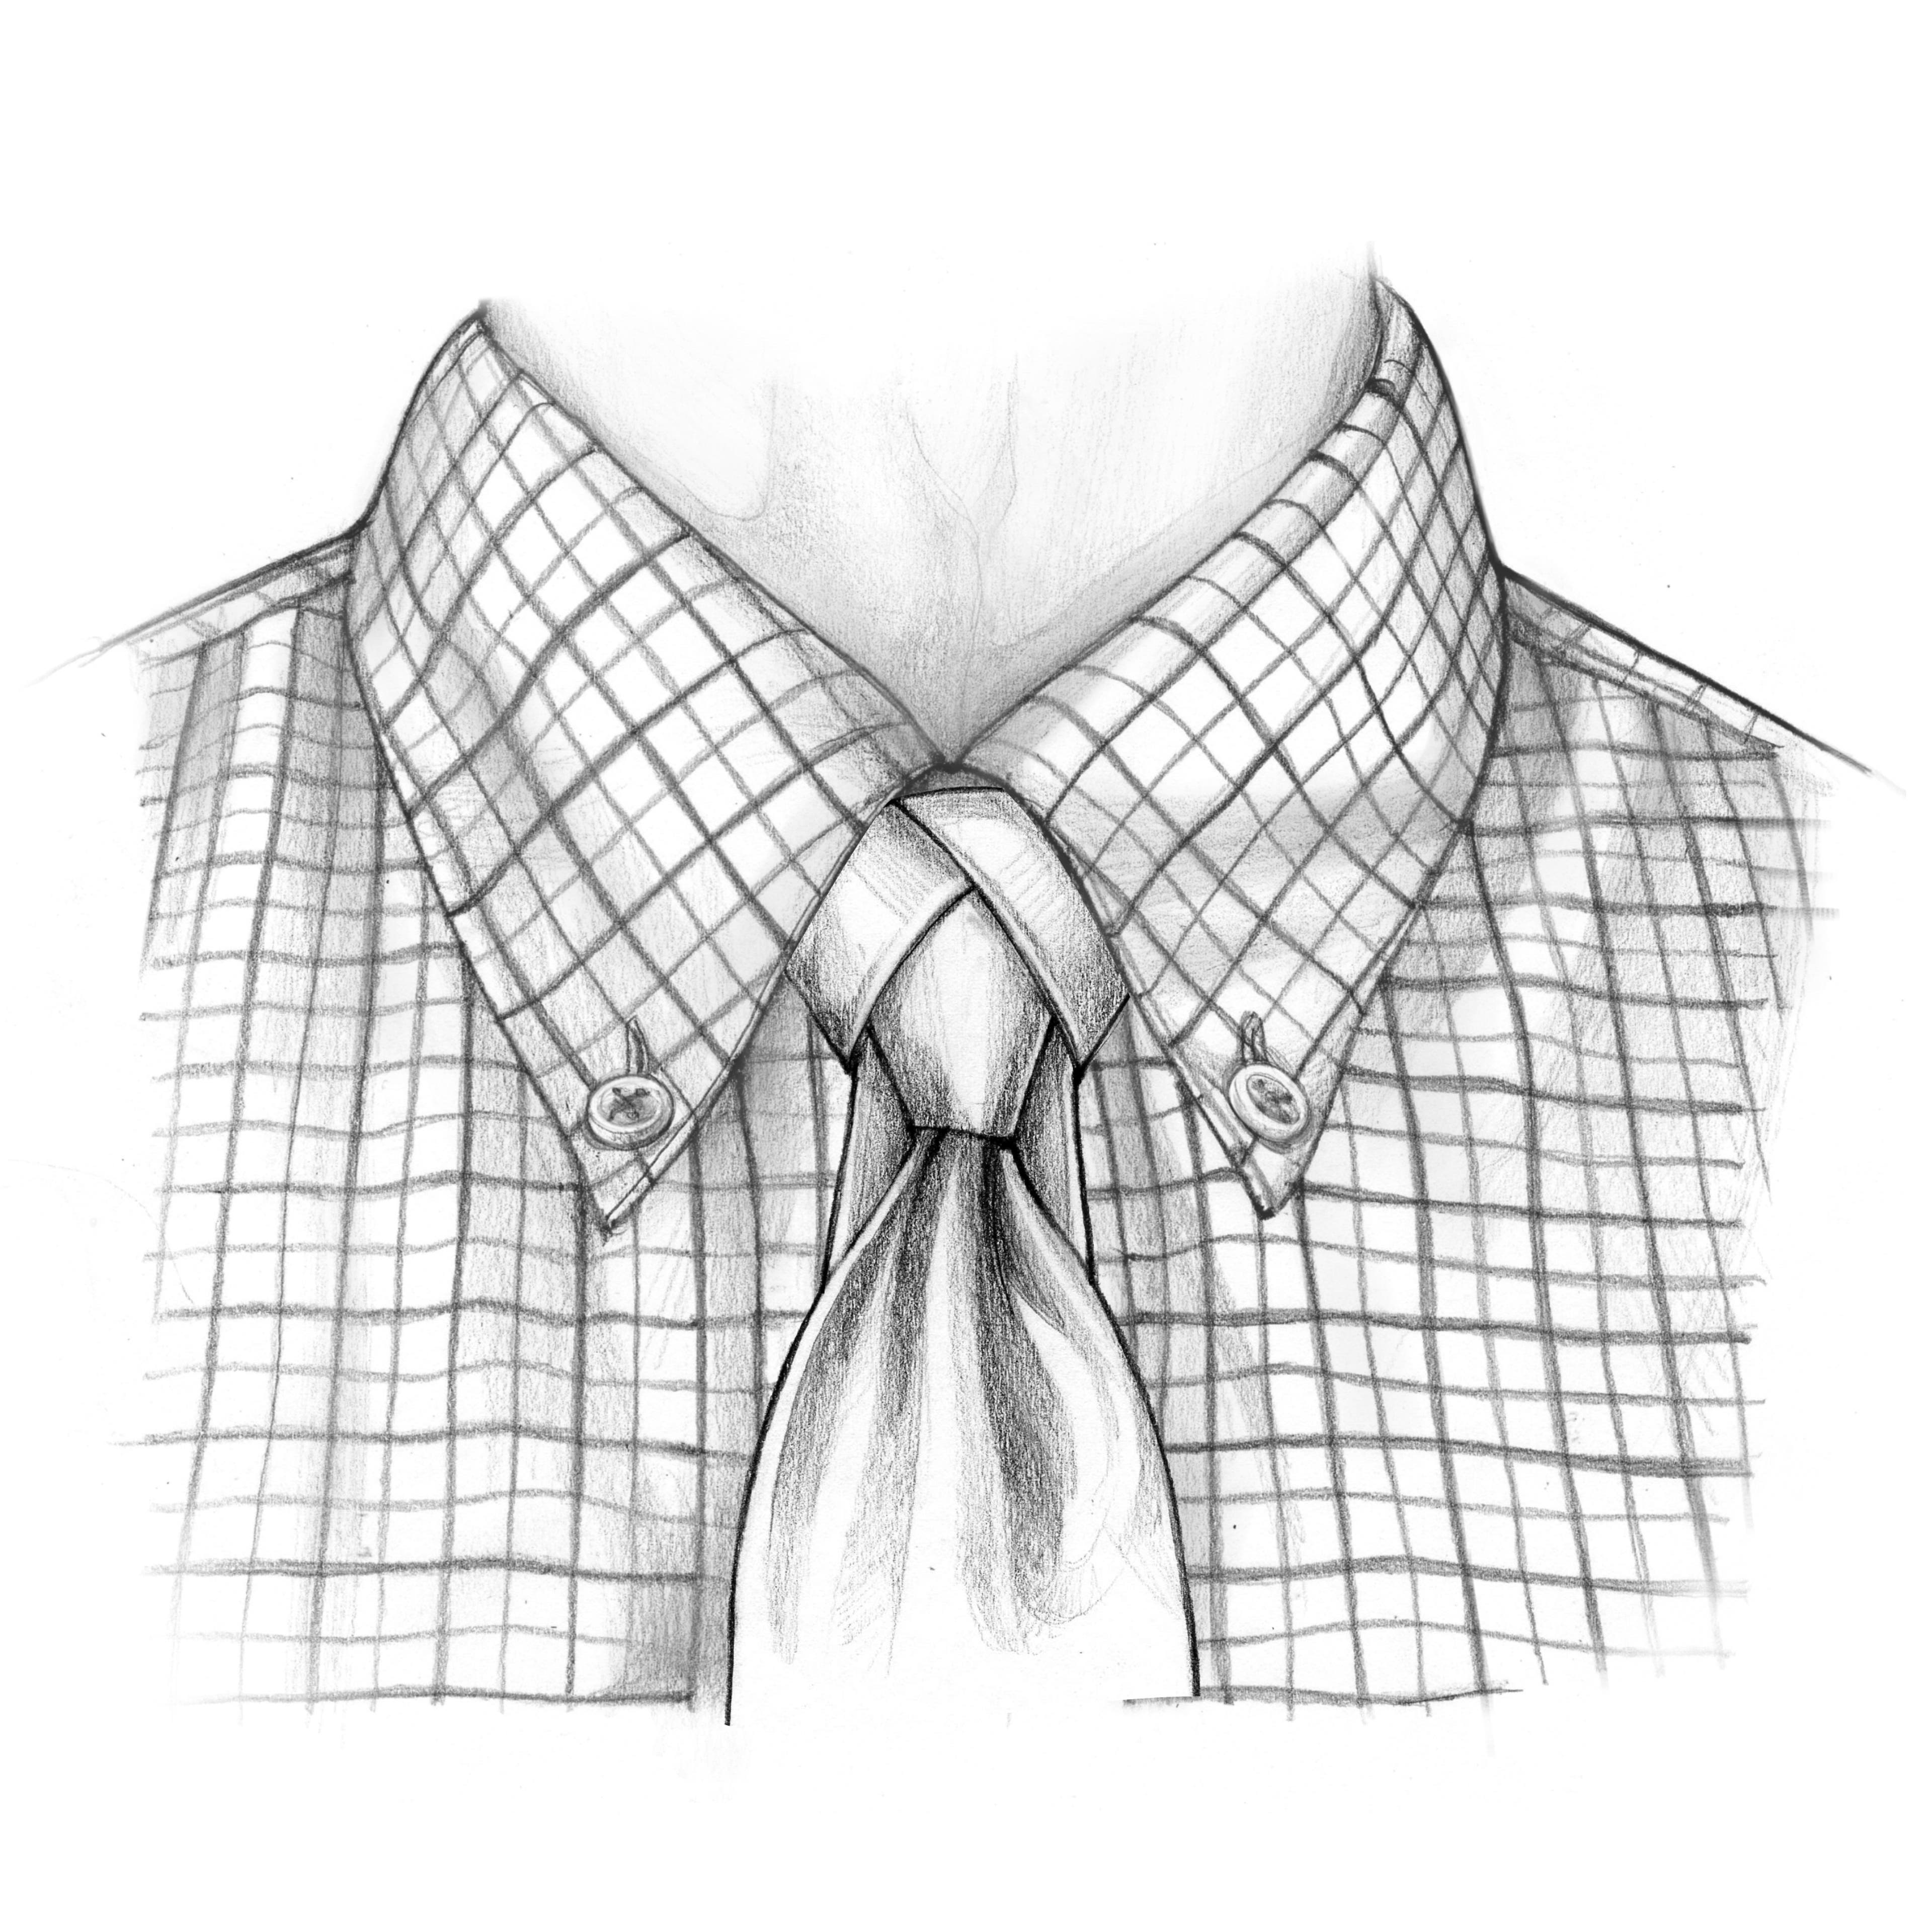 saint andrew tie knot